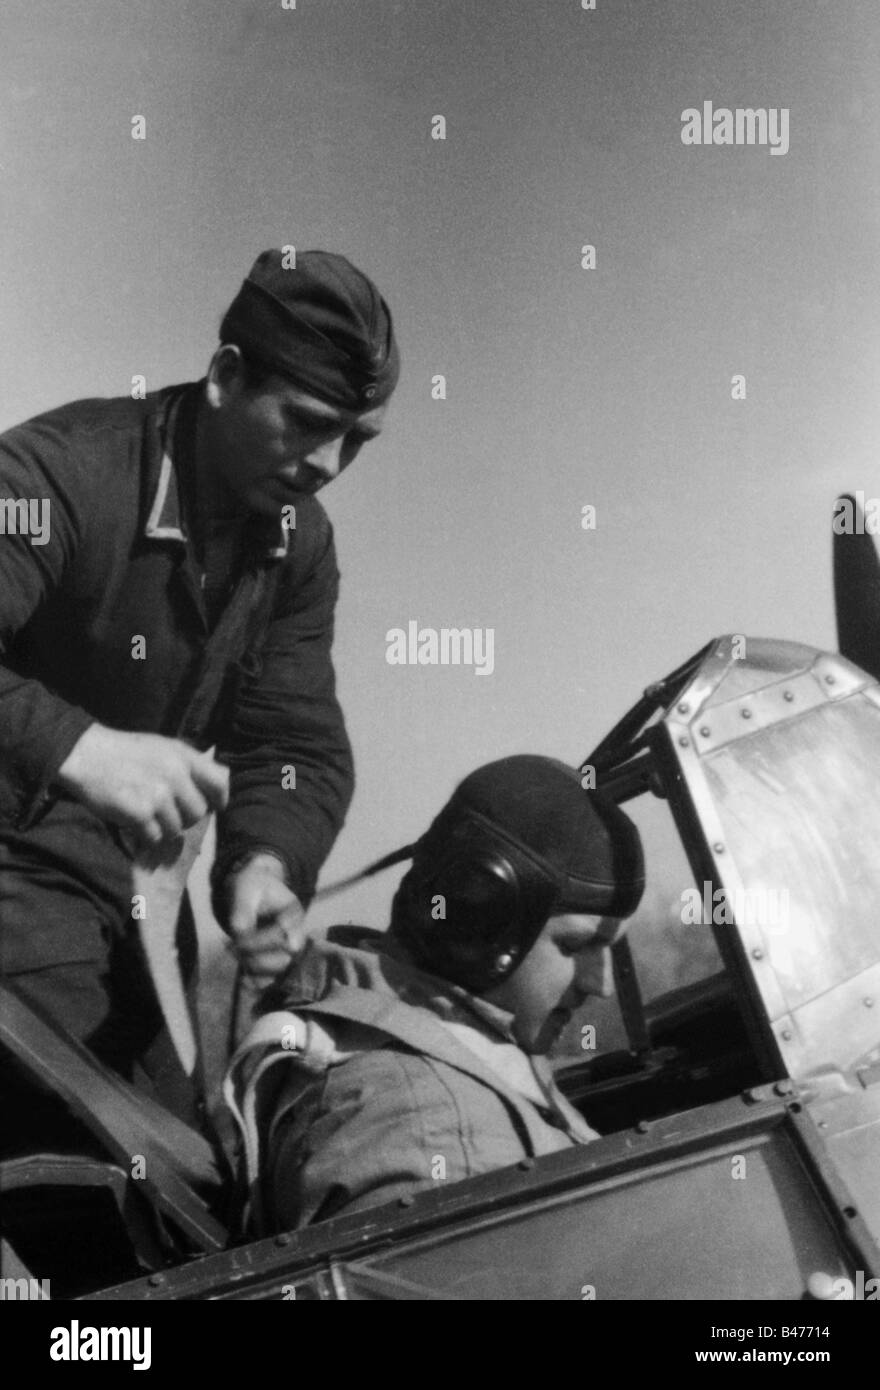 Eventi, Seconda guerra mondiale / seconda guerra mondiale, guerra aerea, persone, una Luftwaffe Oberleutnant (primo tenente) nell'abitacolo del suo combattente pesante, in preparazione per il decollo, fronte orientale, ottobre 1941, Foto Stock